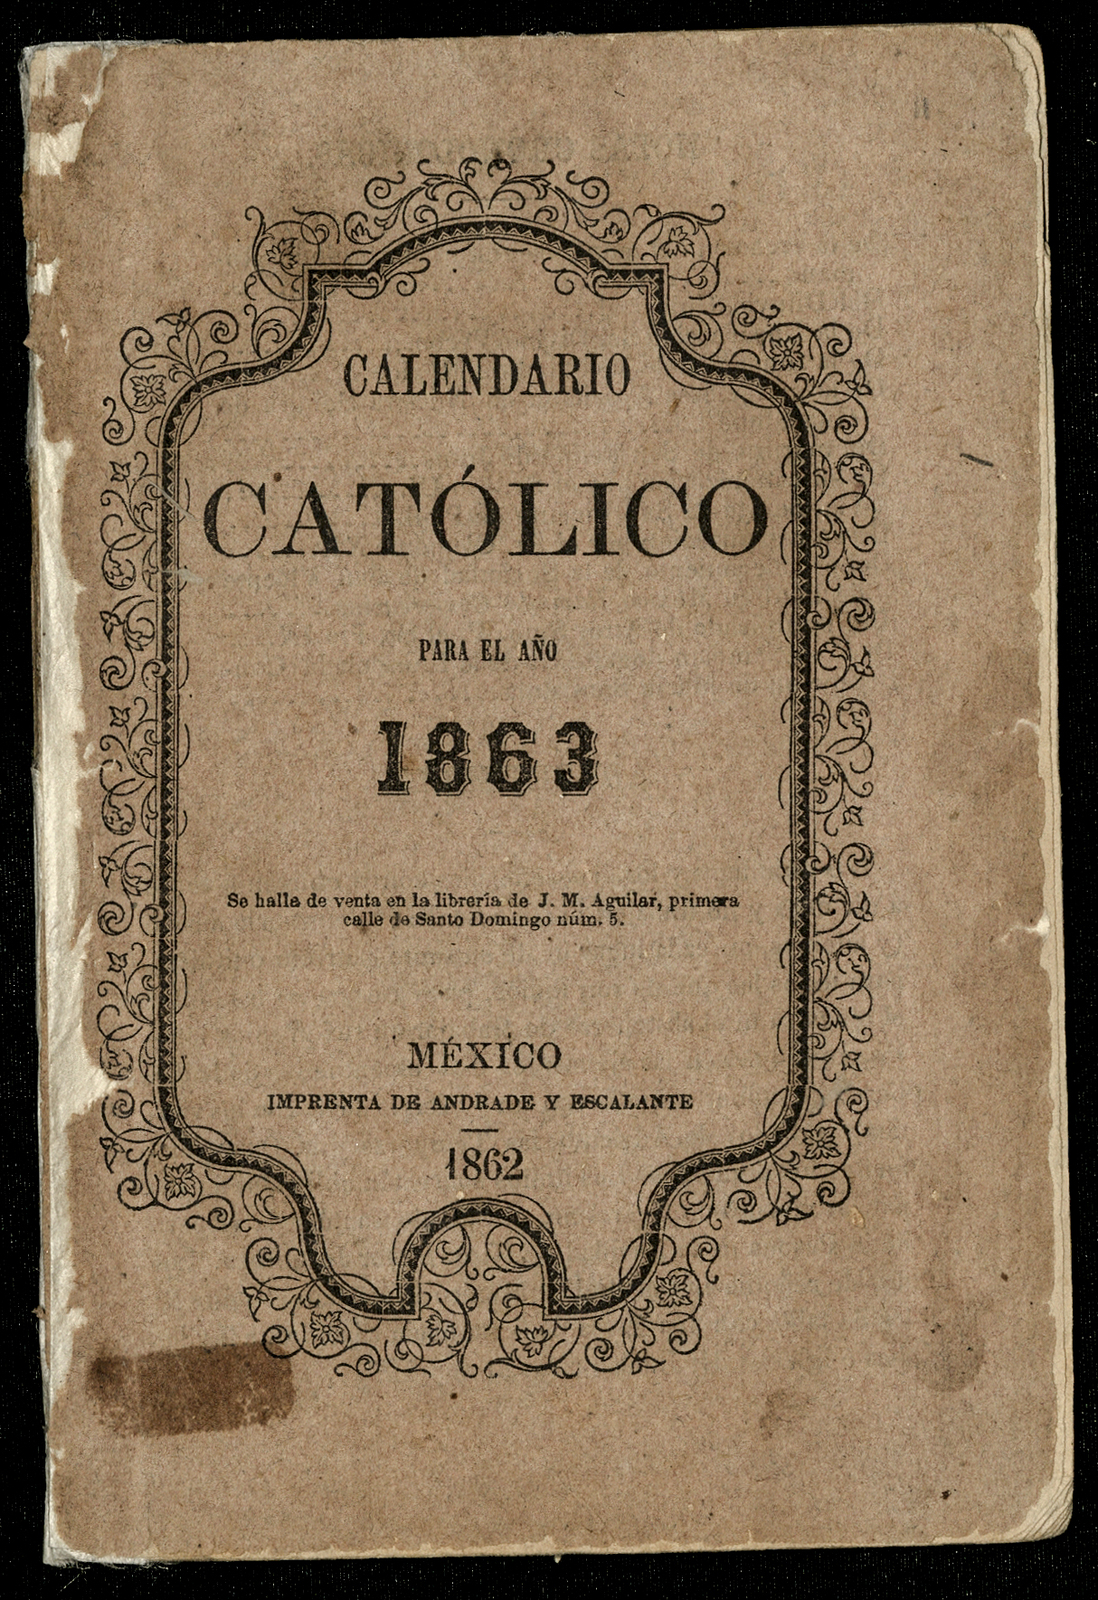 Calendario Católico para el año 1863 publicado para la instrucción del pueblo.